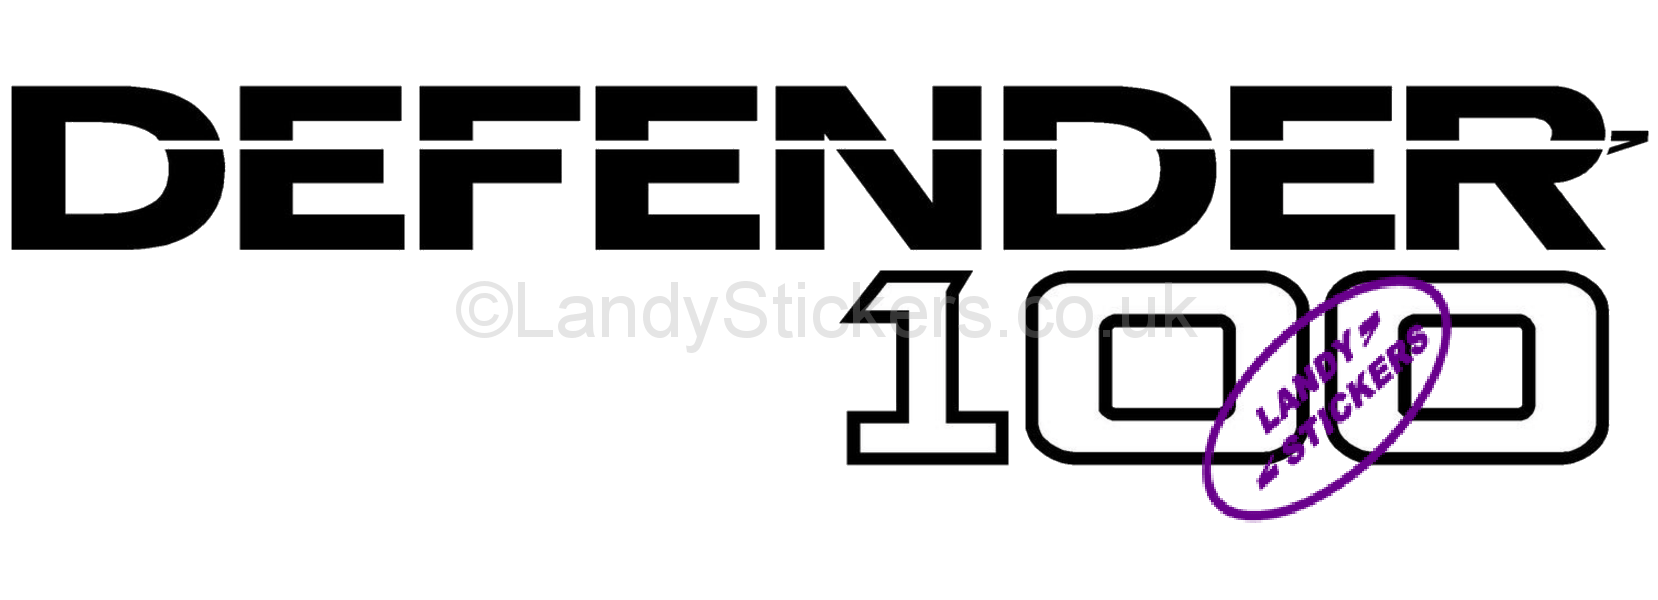 Defender Logo - Defender 110 Logo